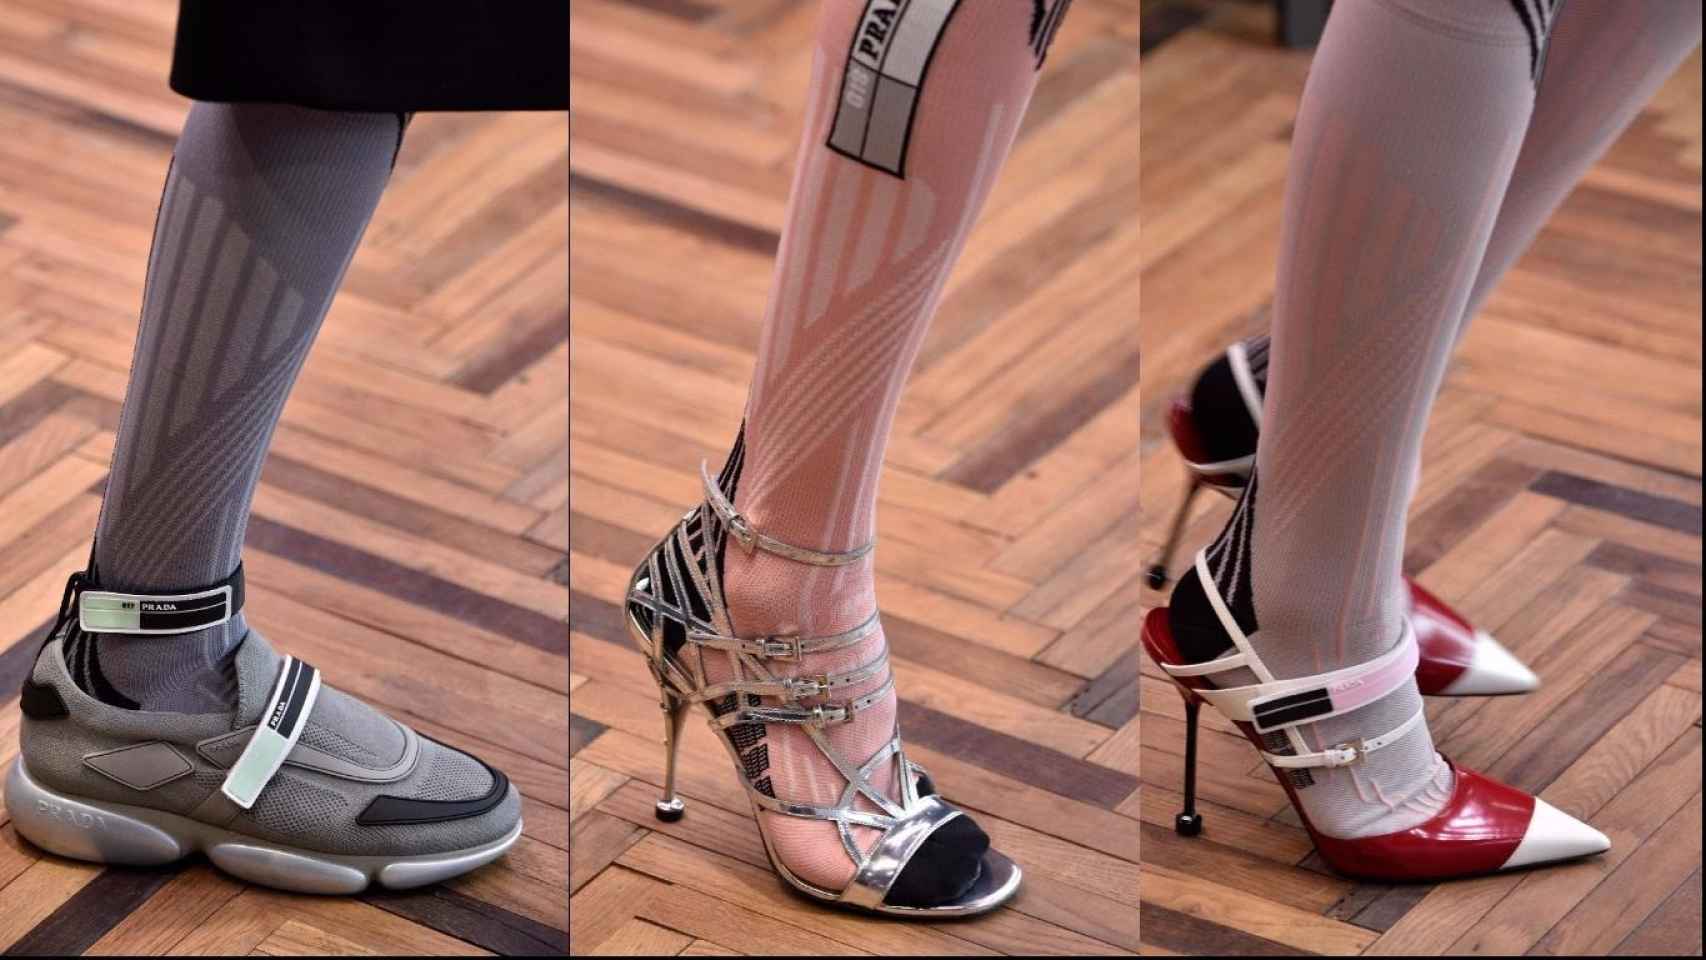 En los pies, con tacones o sin ellos, la inspiración es clara: futurismo y mucho deporte. | Foto: Getty Images.